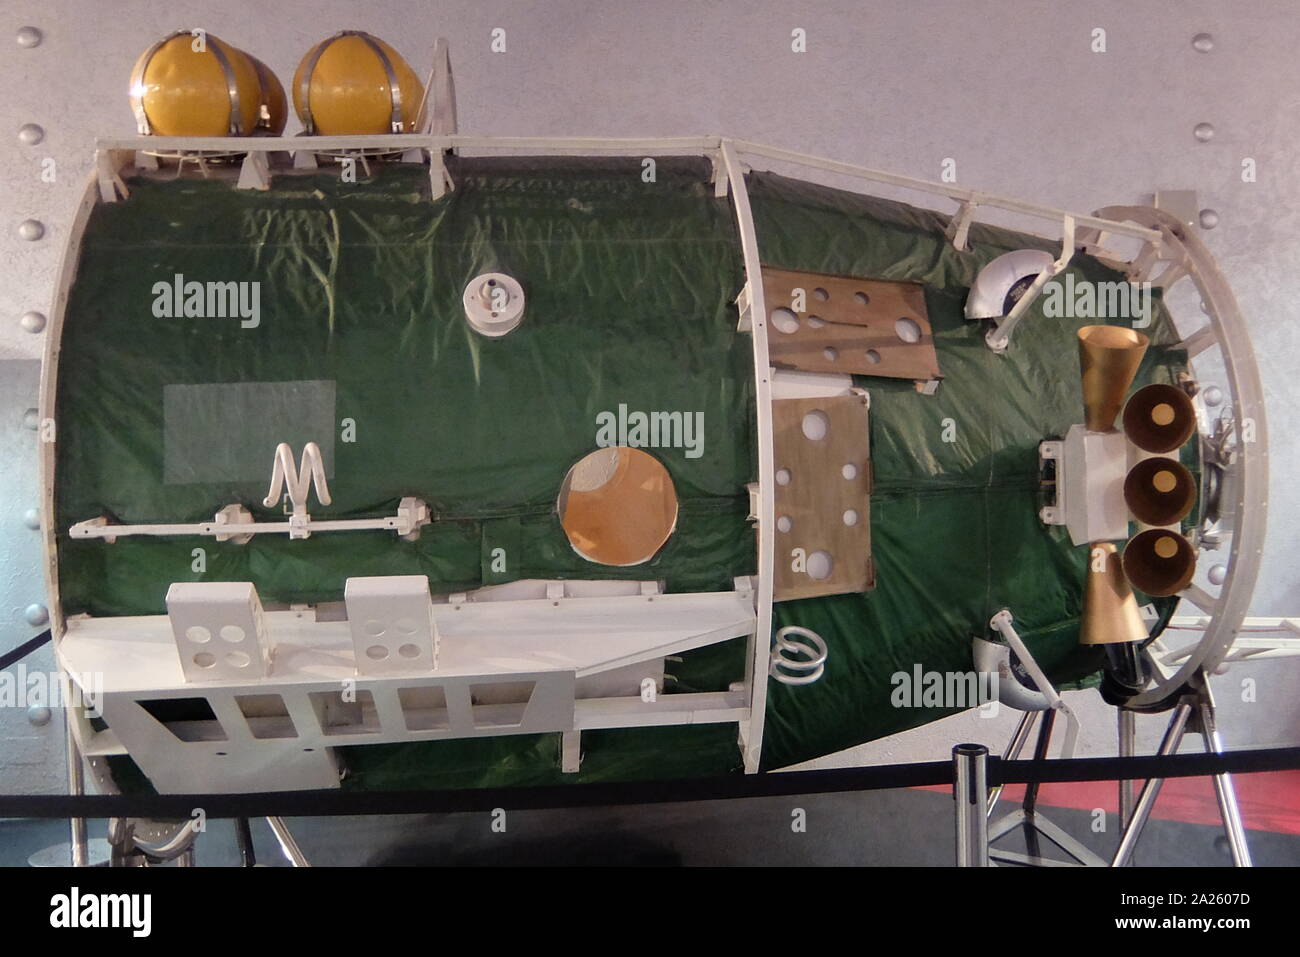 Airlock della stazione spaziale Mir che operavano in bassa orbita terrestre dal 1986 al 2001, azionato dall'Unione Sovietica e poi dalla Russia. Mir è stato il primo spazio modulare e la stazione è stata assemblata in orbita dal 1986 al 1996. Essa aveva una massa maggiore rispetto a qualsiasi precedente veicolo spaziale Foto Stock